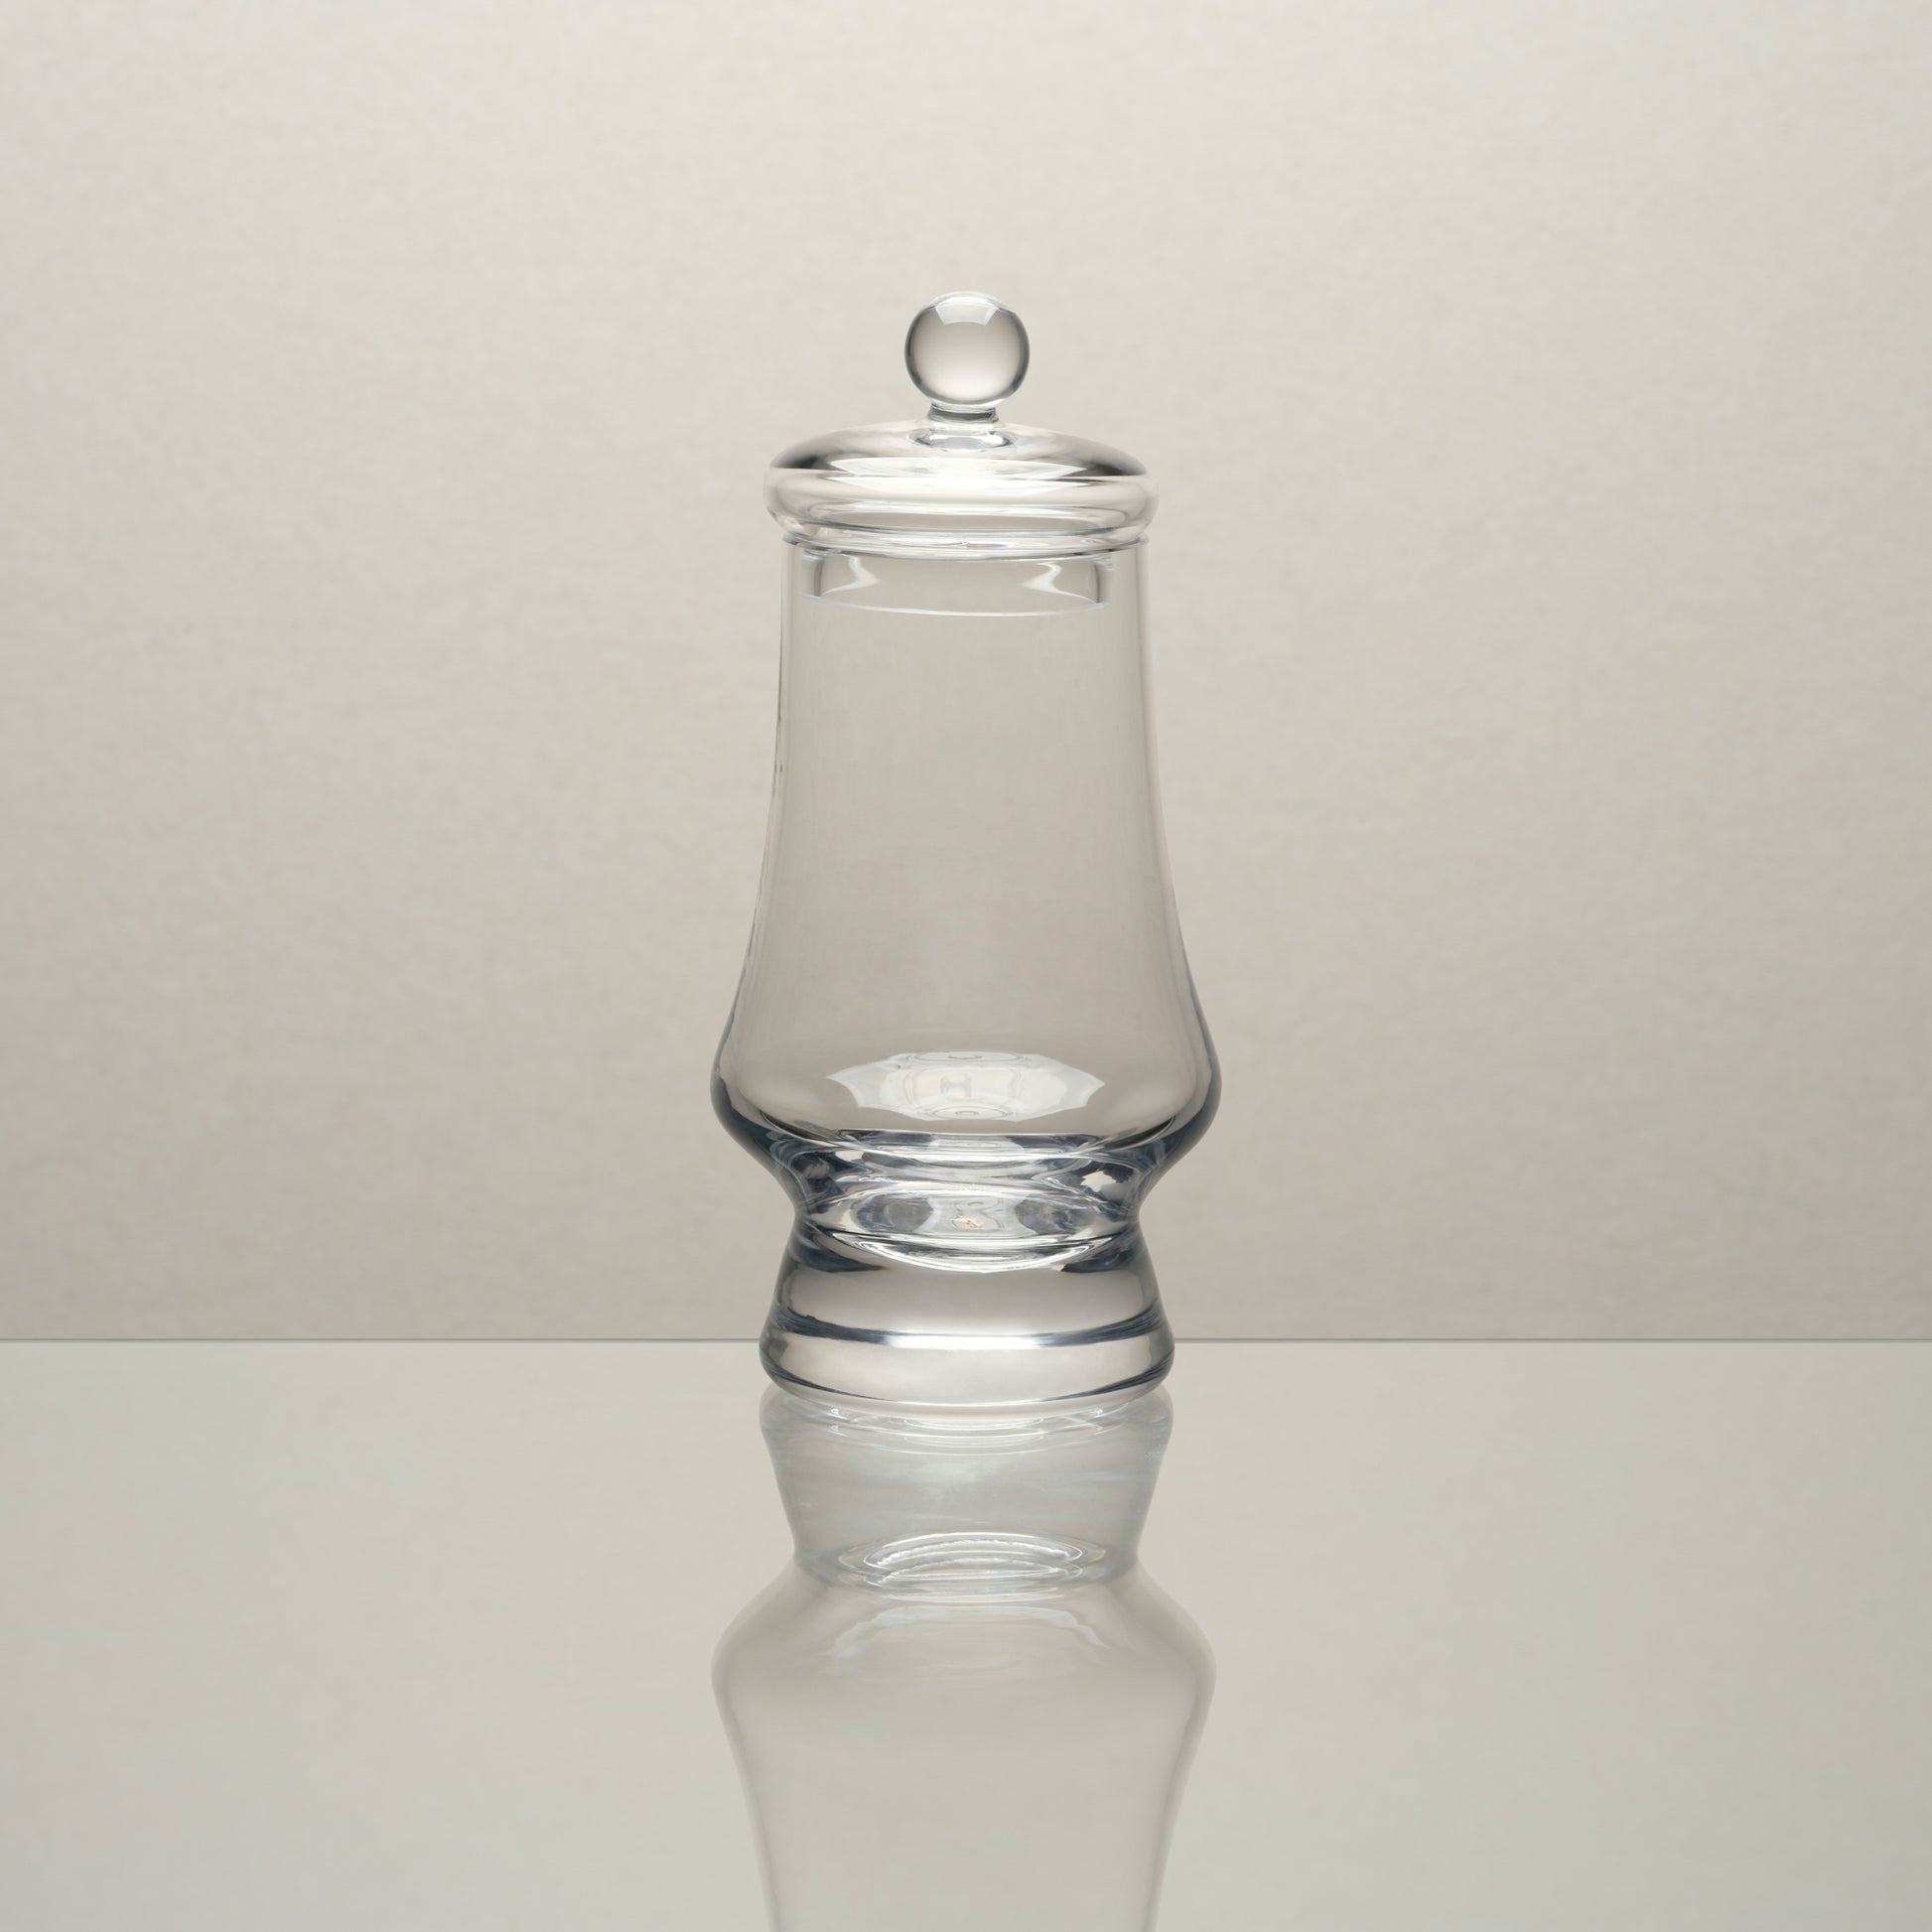 Amber Glass - G500 Whisky Tasting Glass